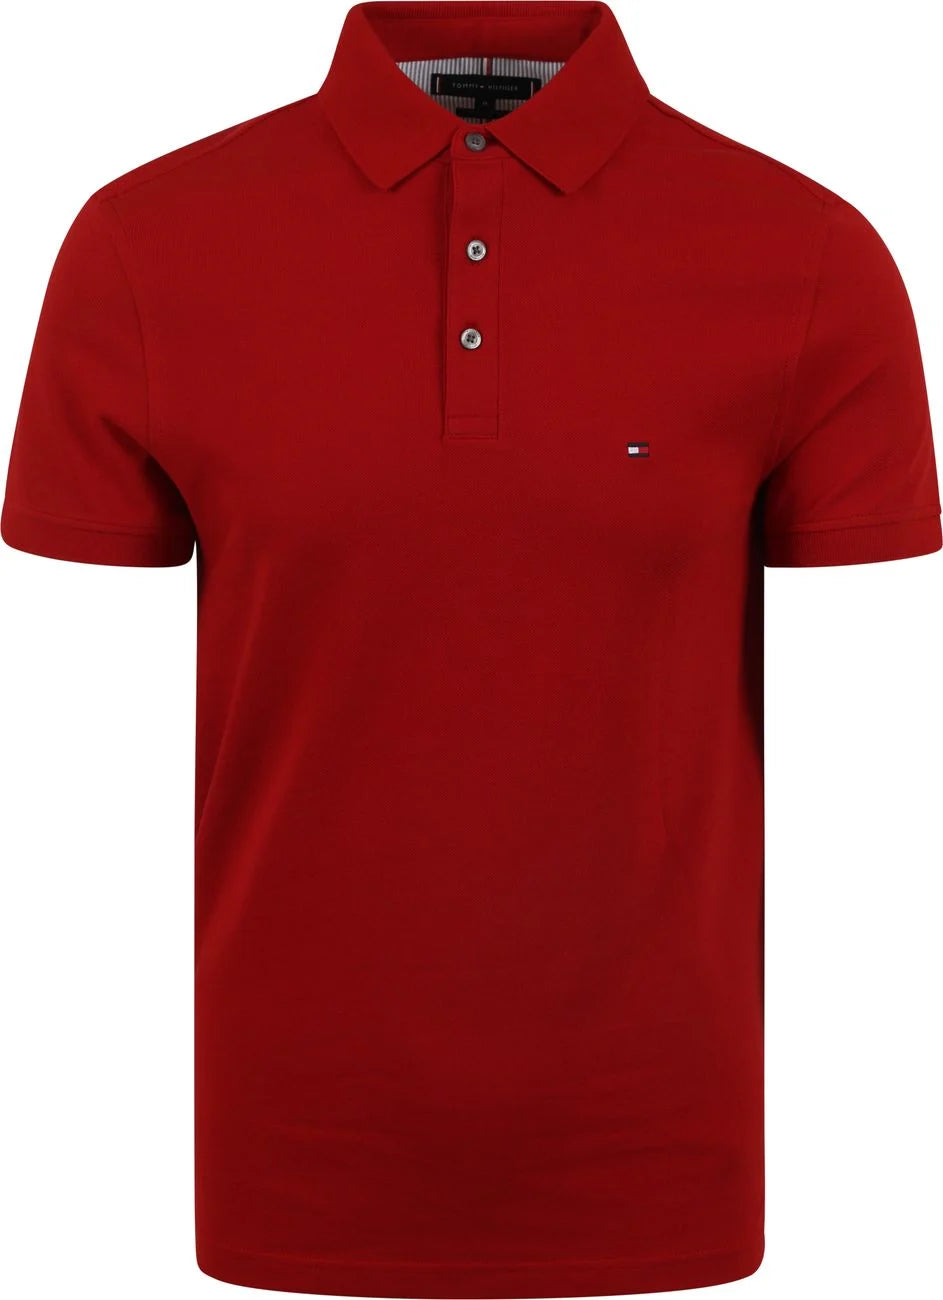 Polo Tommy Hilfiger ajusté rouge en coton bio pour homme I Georgespaul